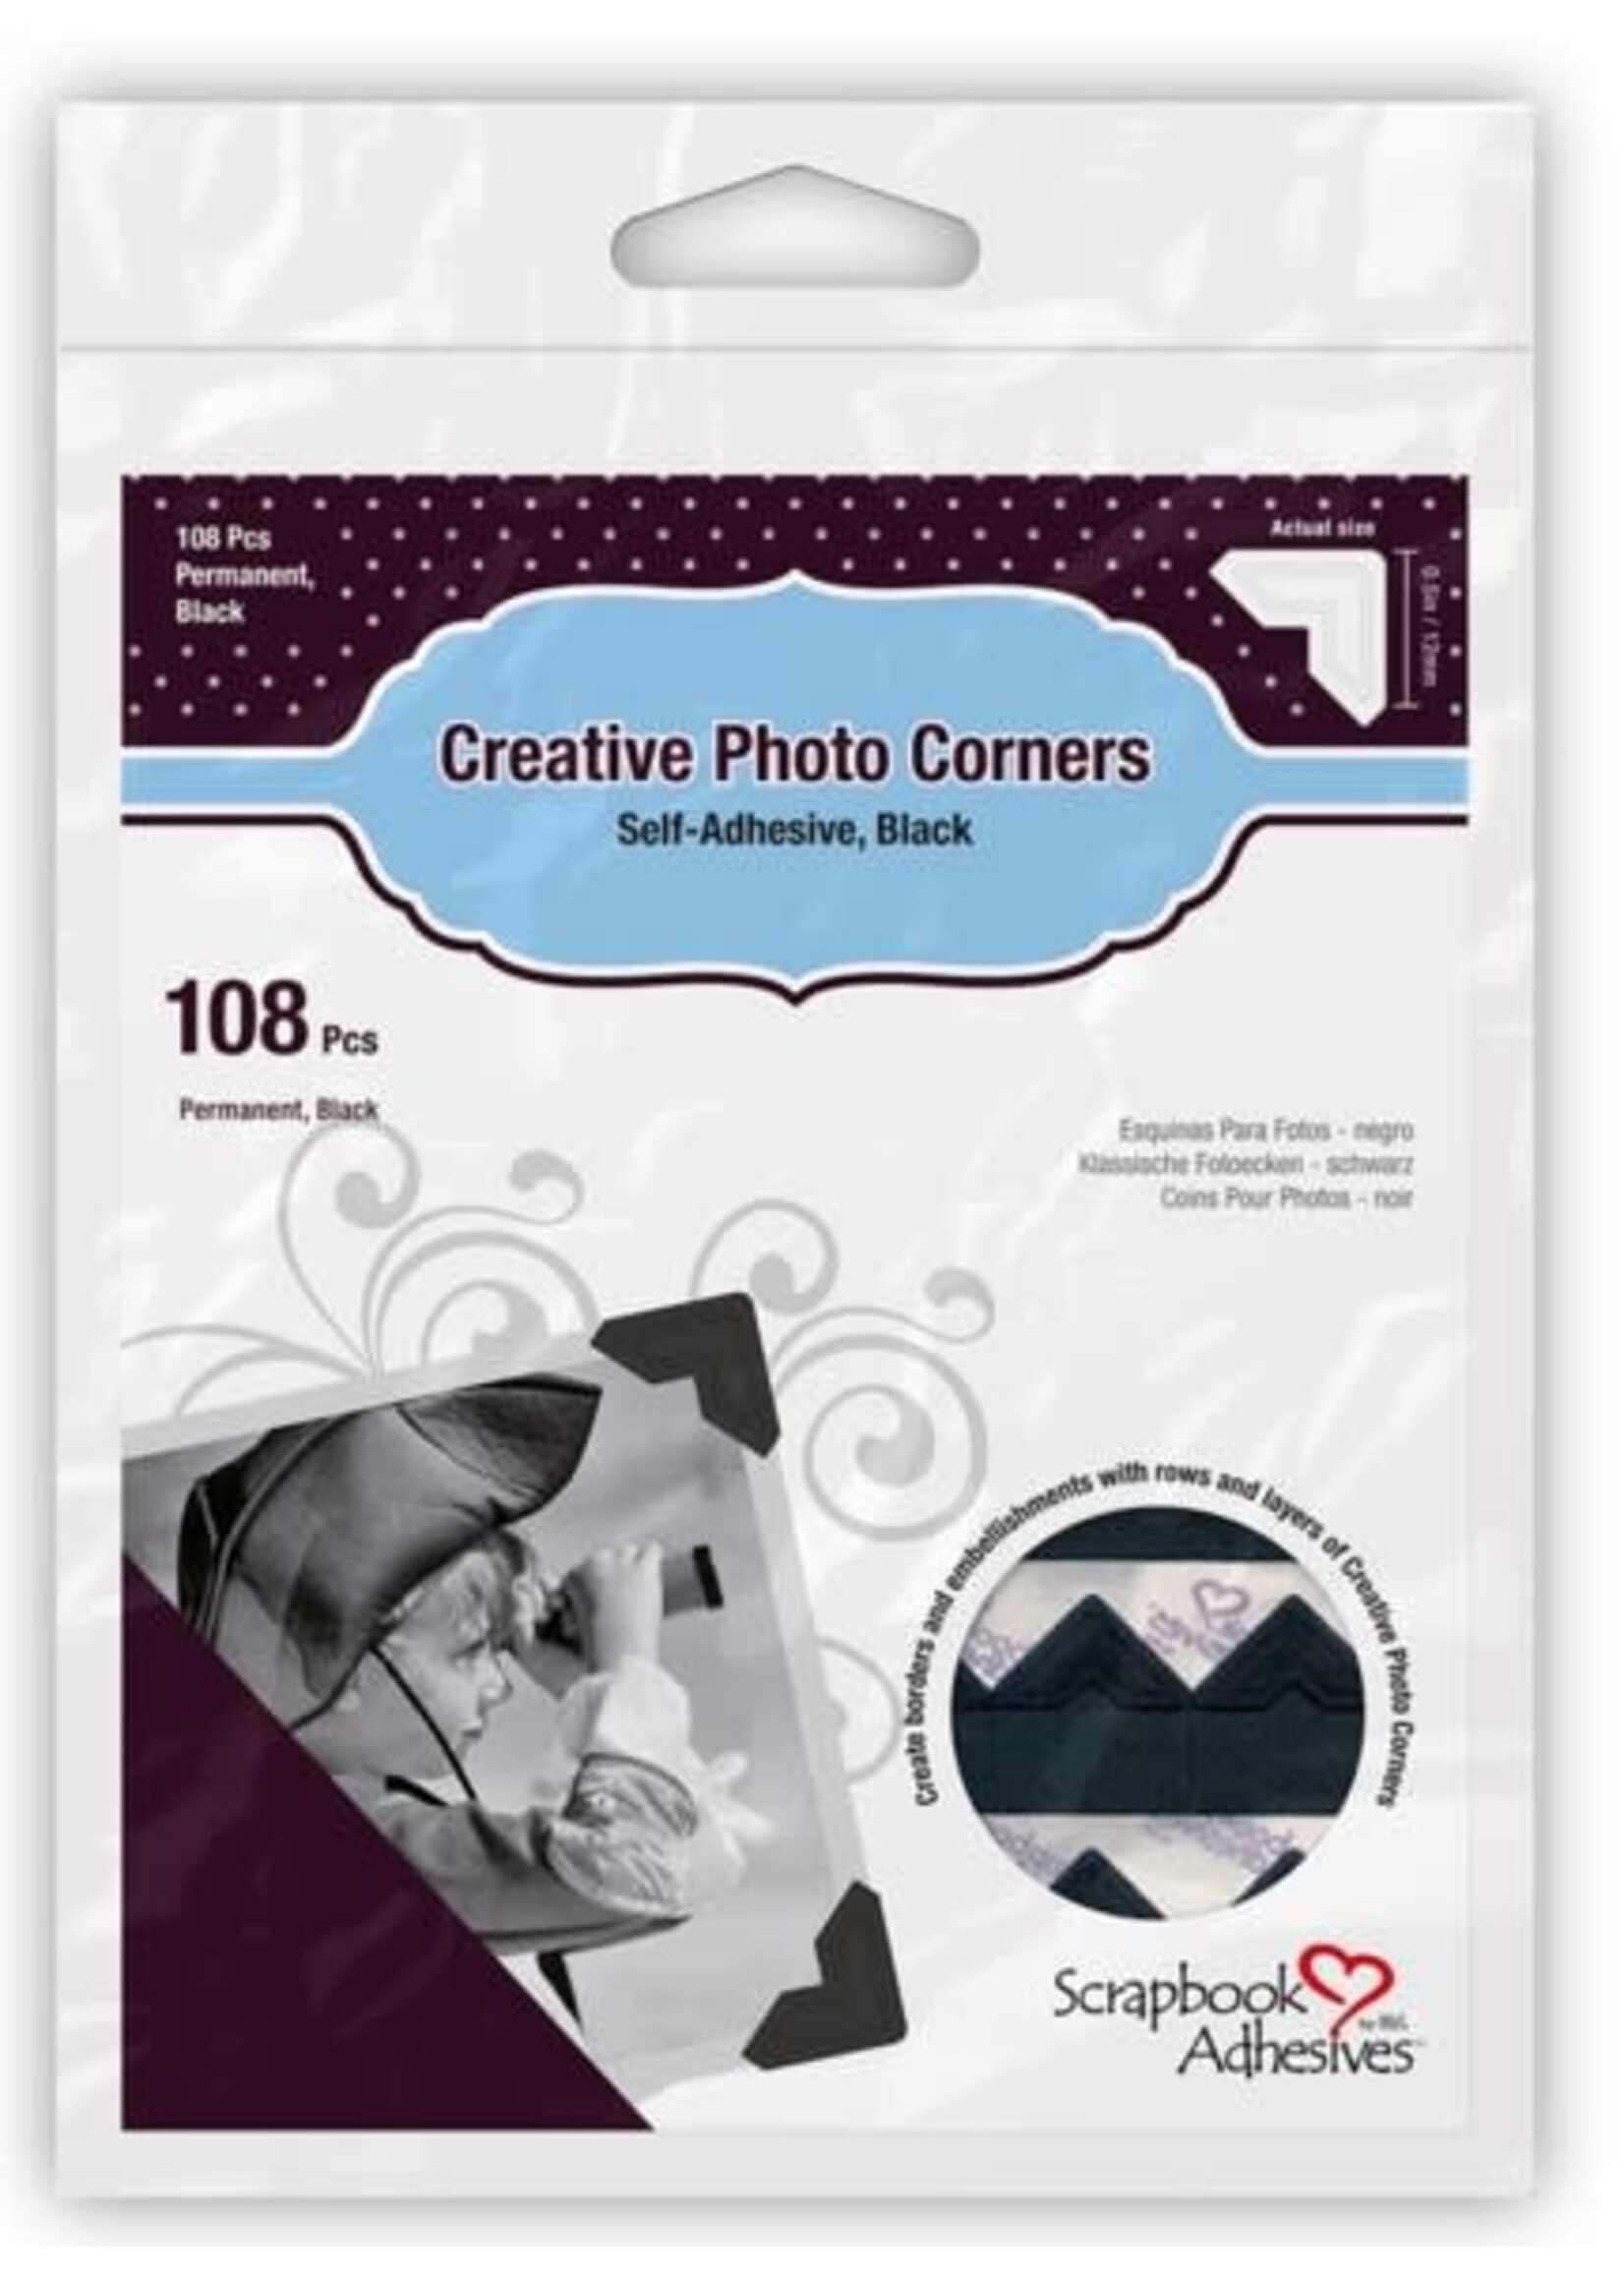 Scrapbook Adhesive SA Creative Photo Corners [108]